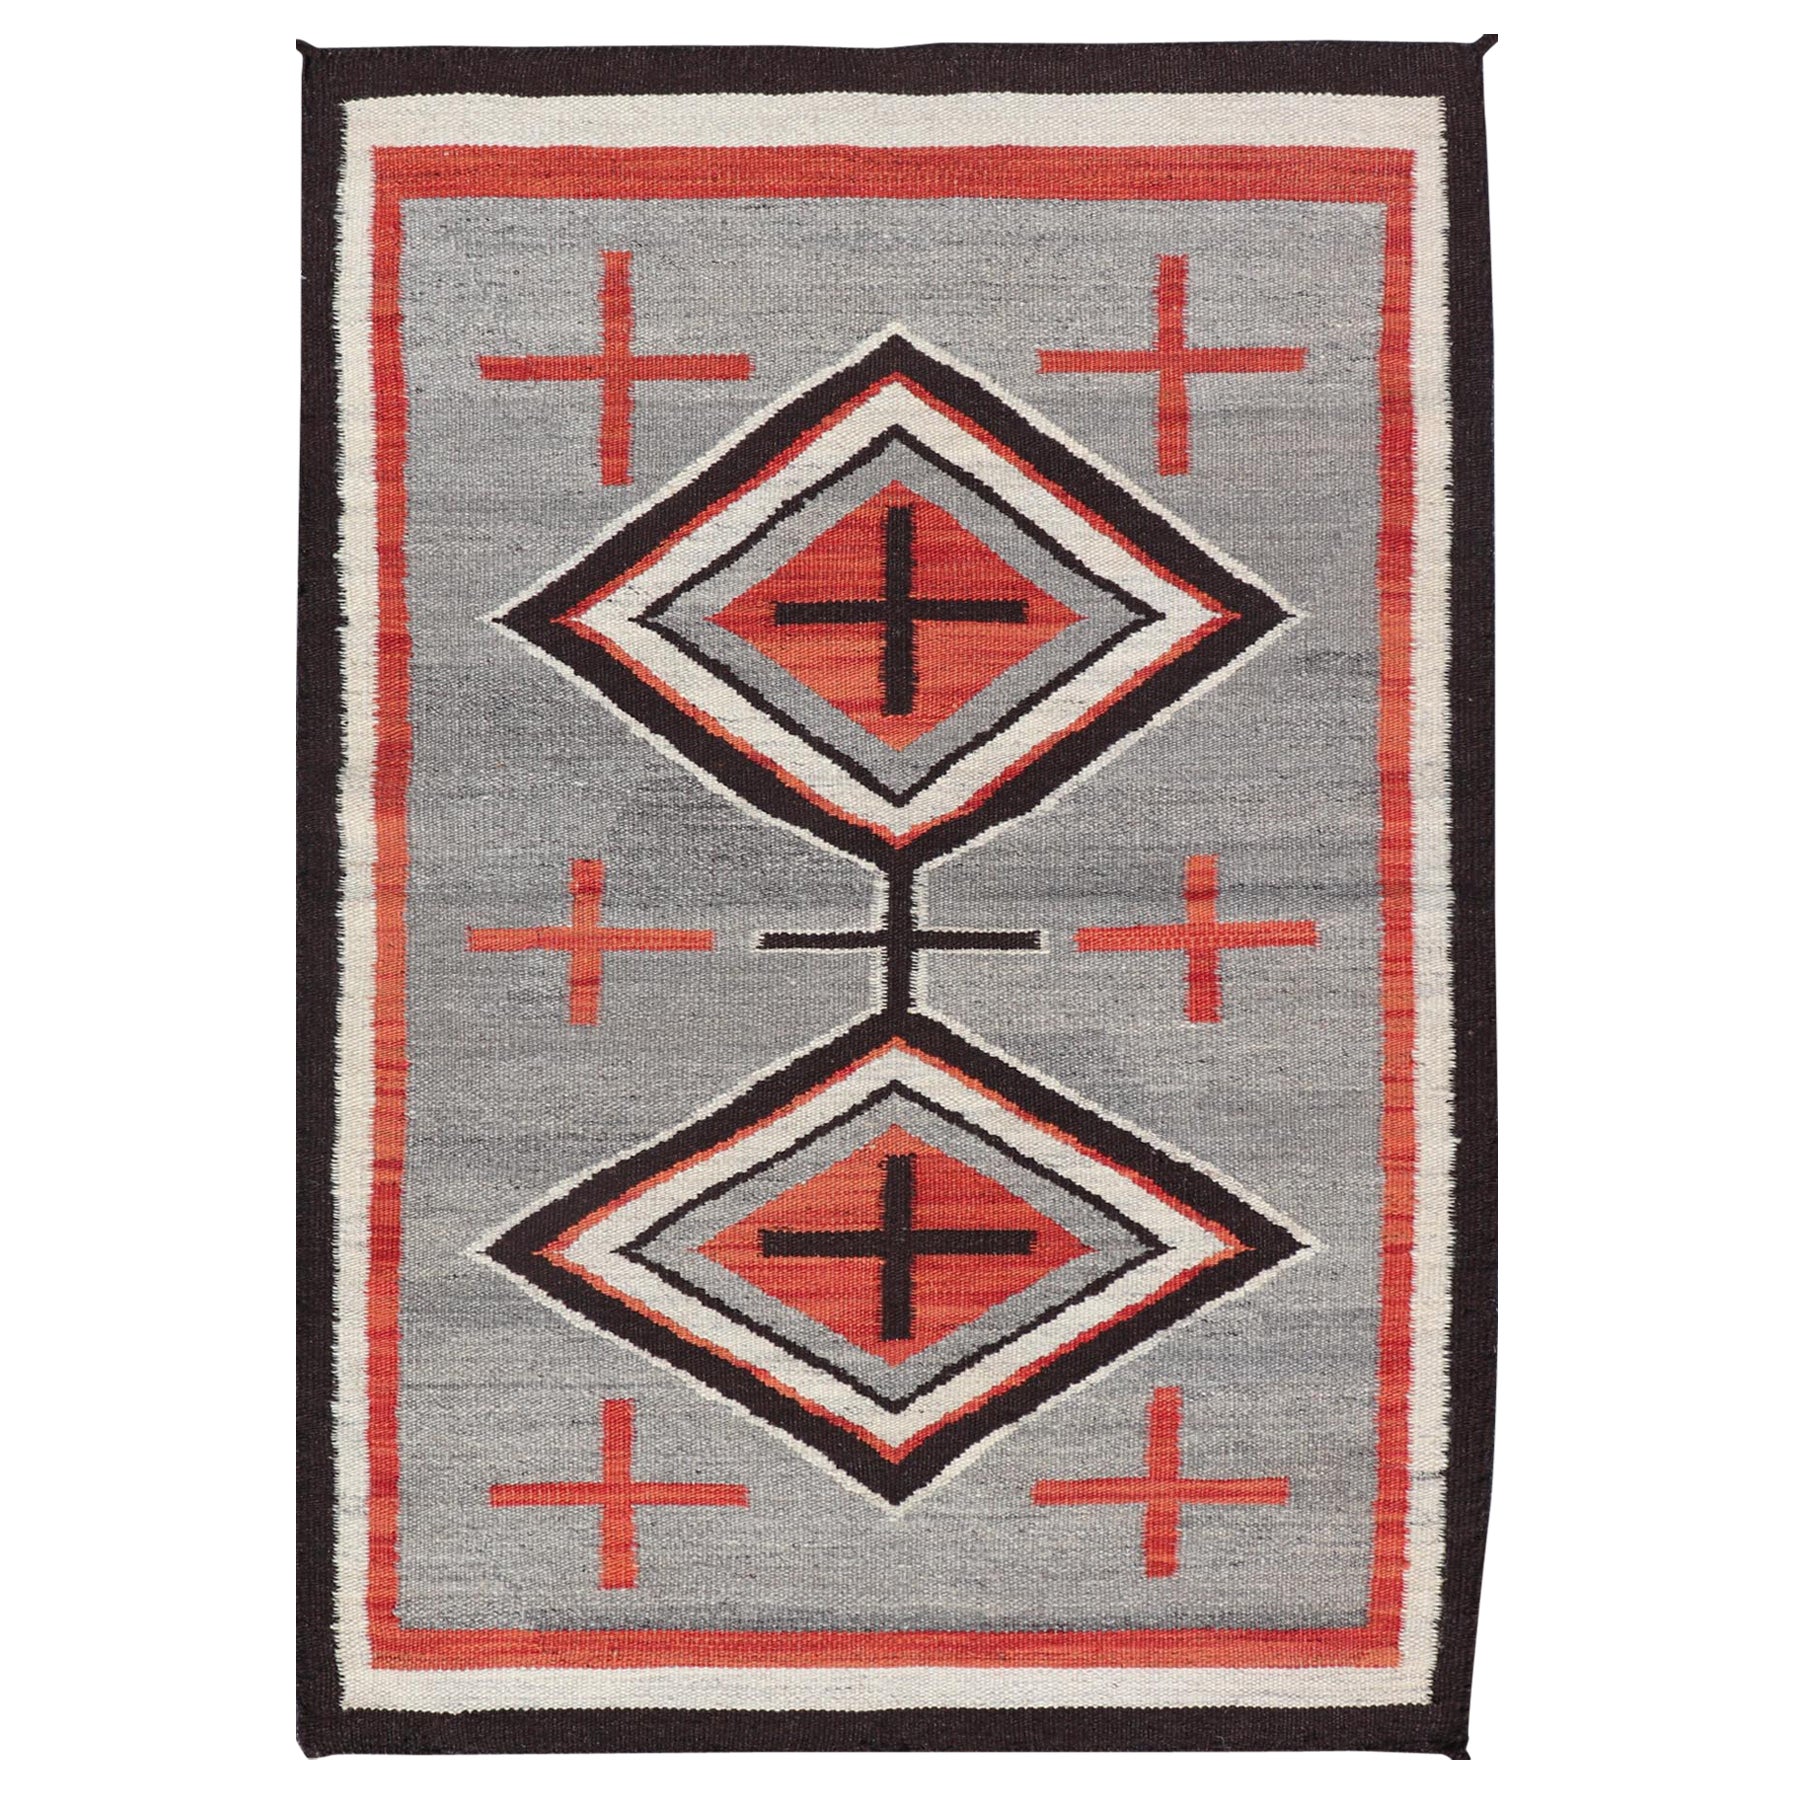 Tapis Navajo moderne à motif tribal géométrique en gris, rouge, anthracite et ivoire